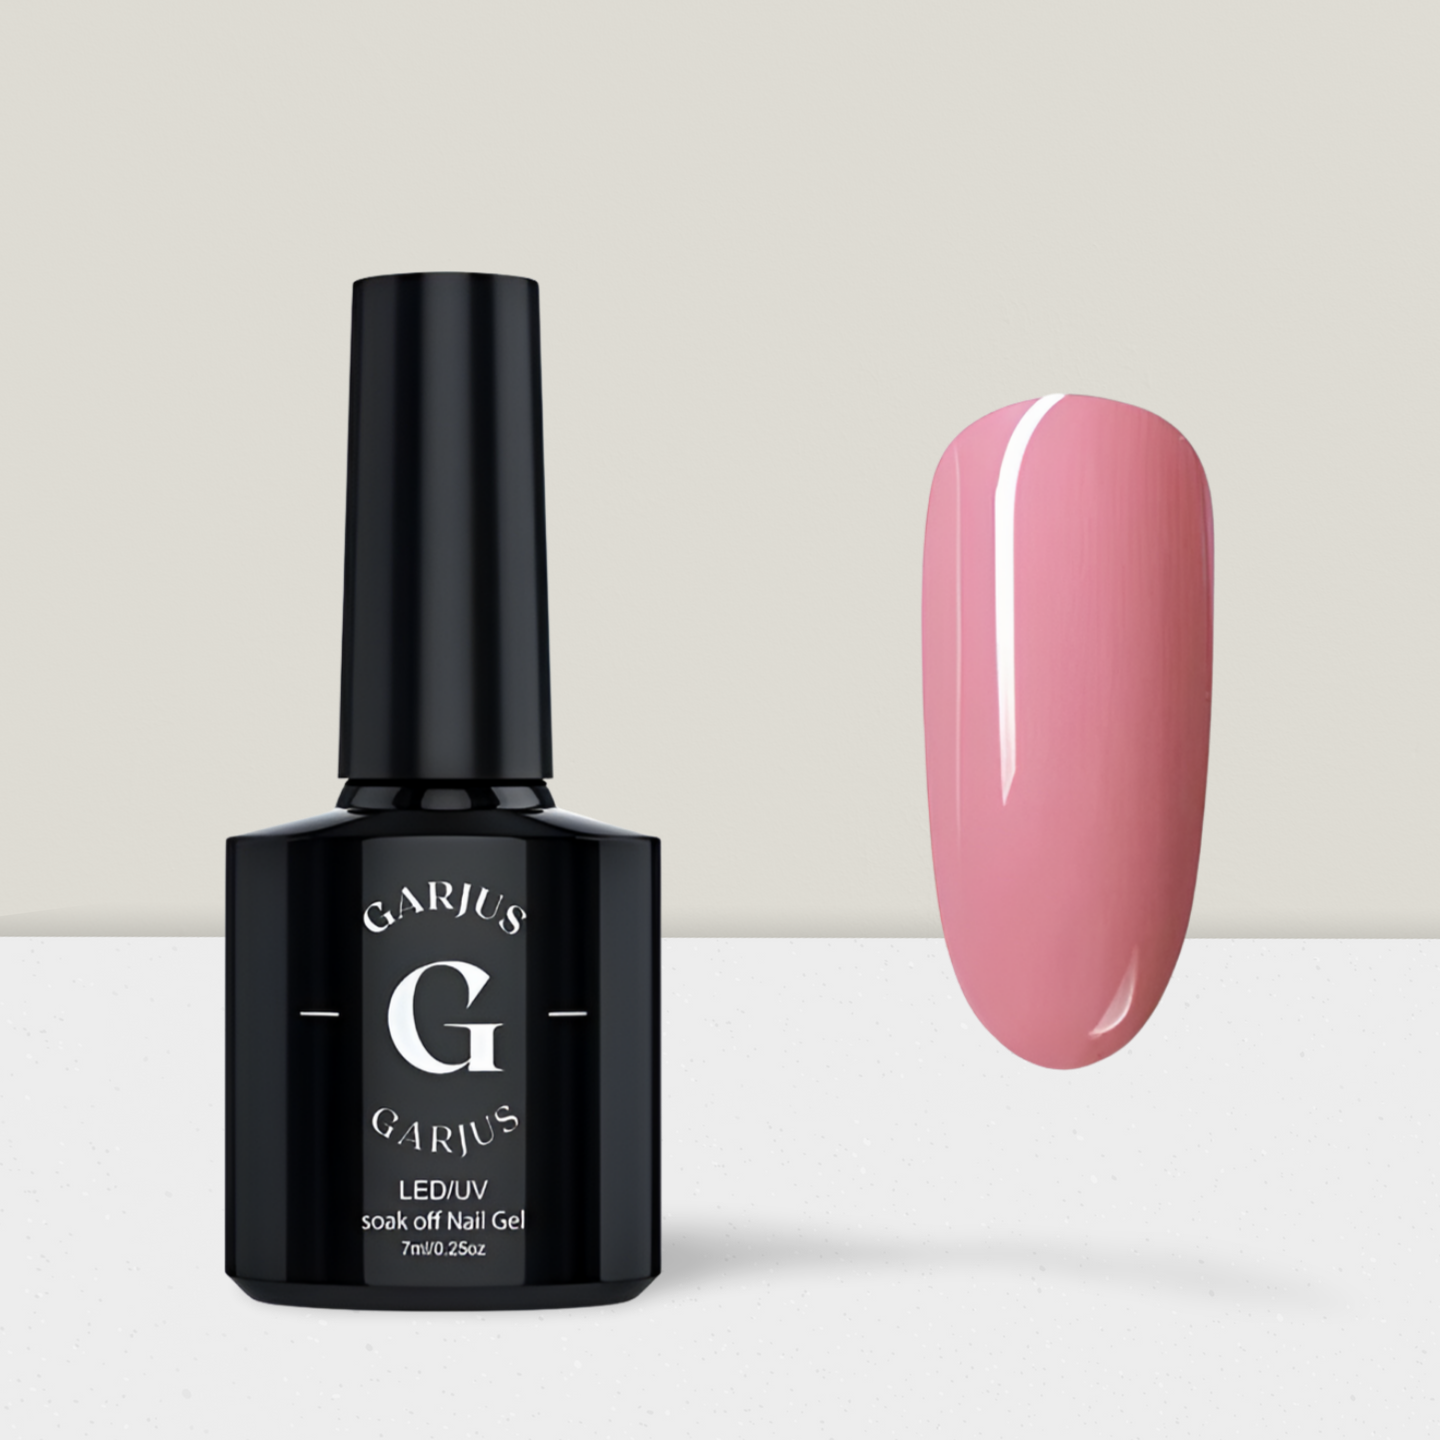 rose pink nail gel polish 102